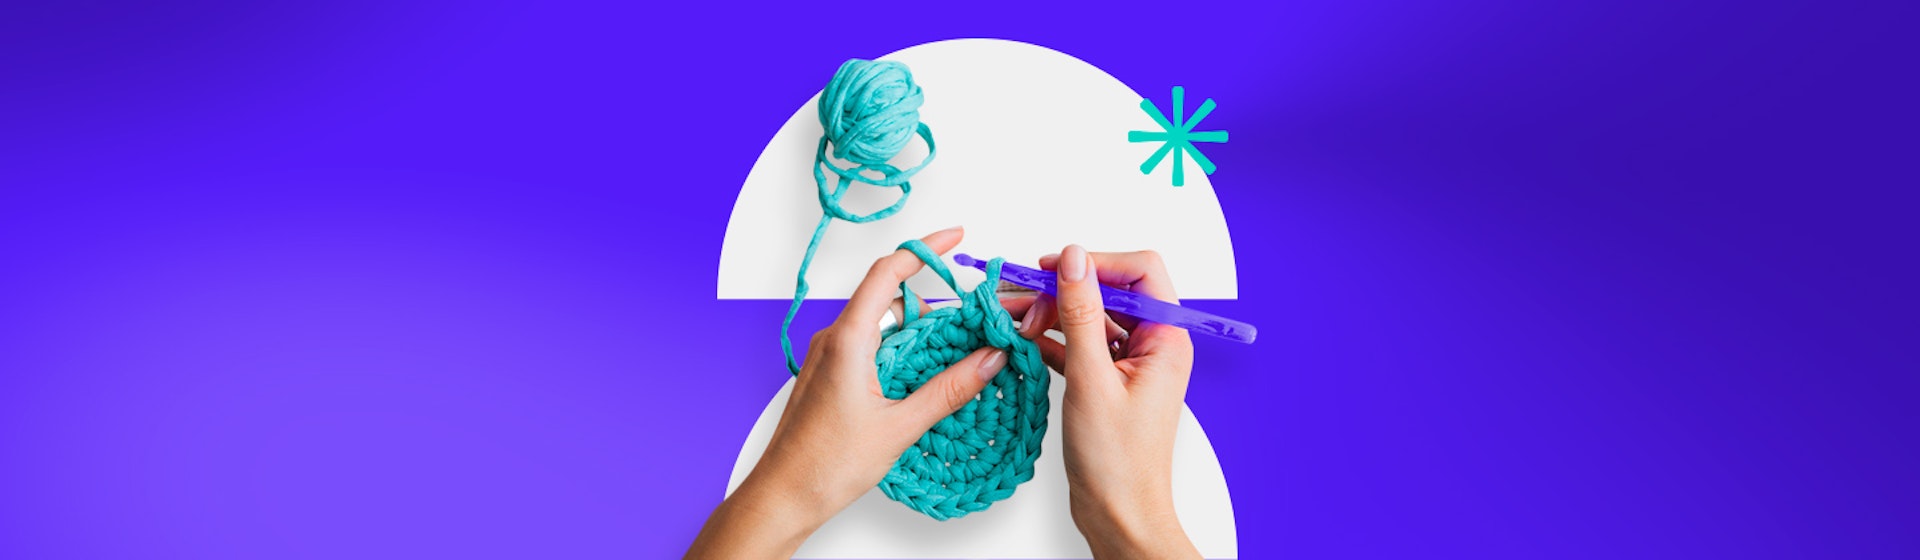 Crochet para principiantes: ¿Cómo tejer paso a paso? Guía completa